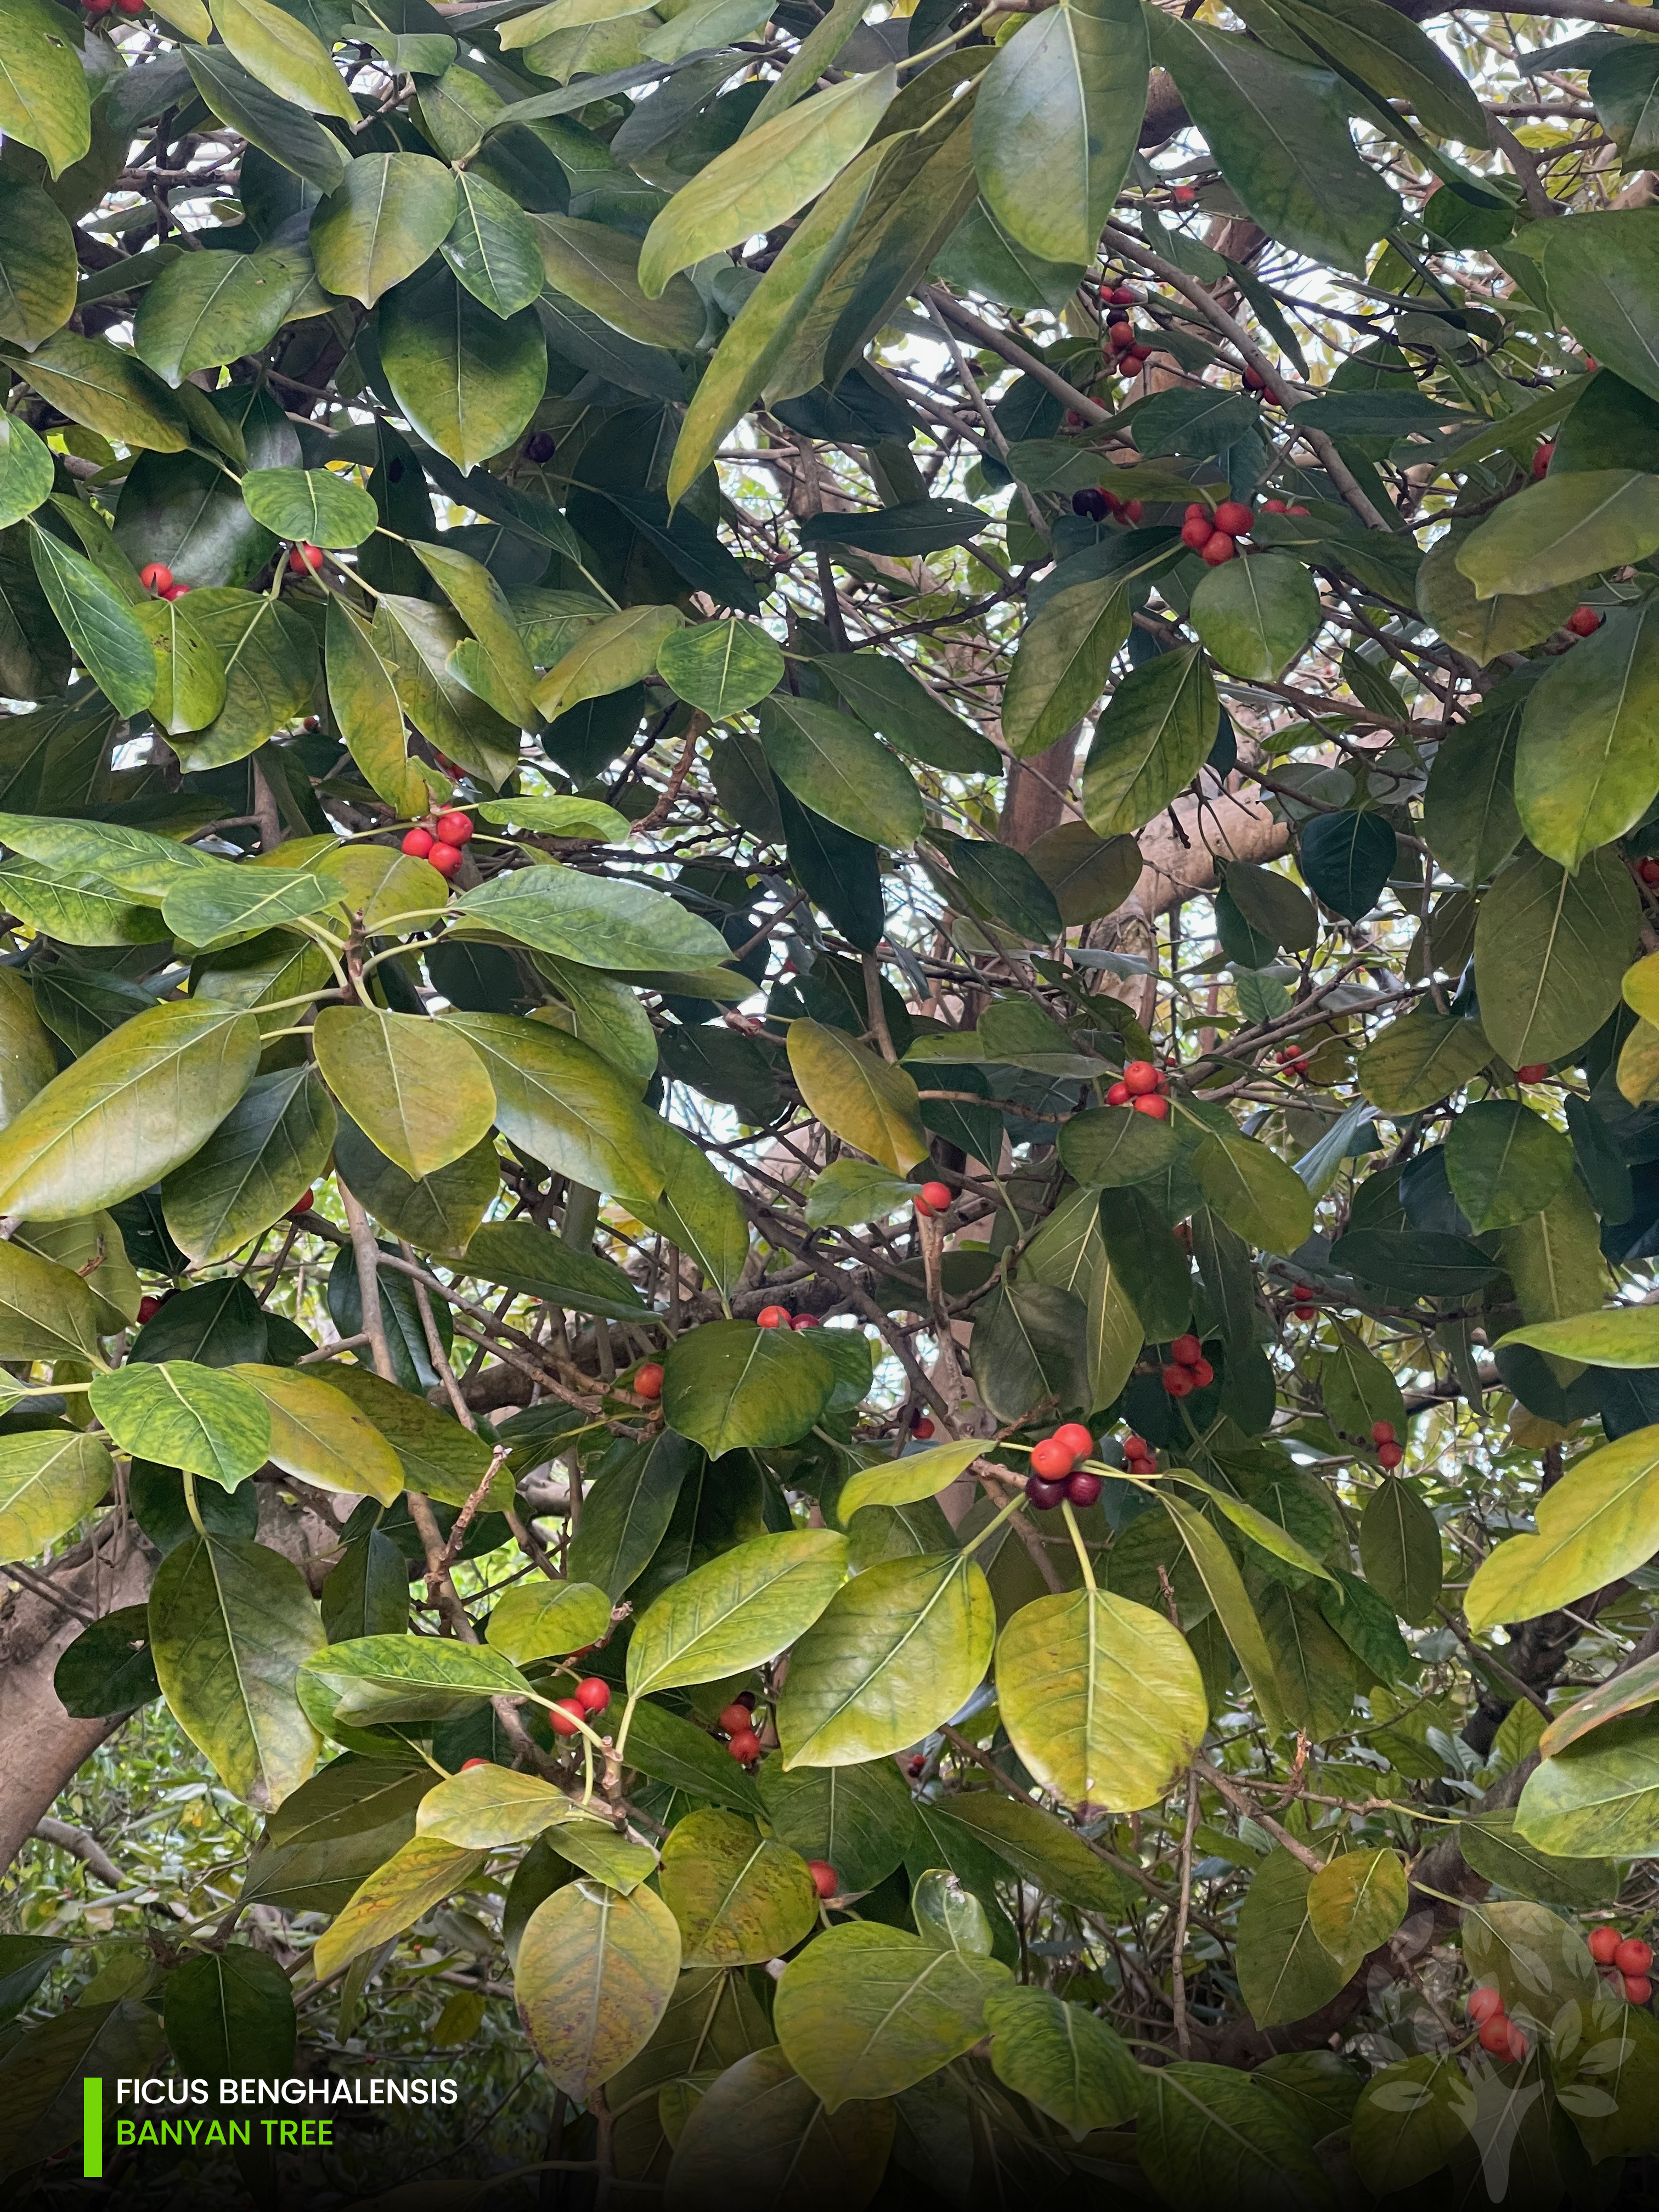 ficus benghalensis - banyan tree